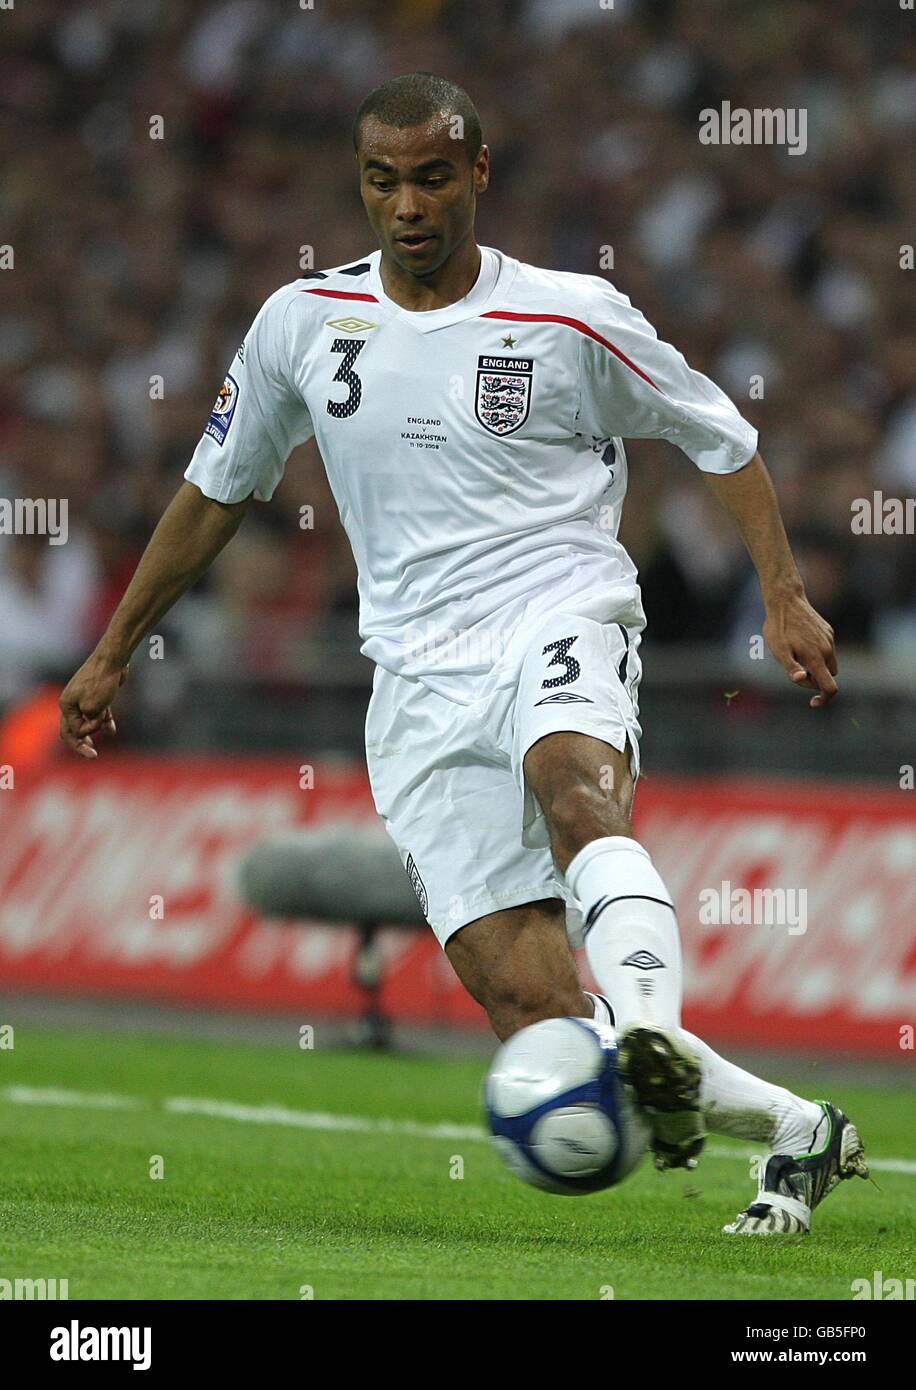 Soccer - FIFA World Cup 2010 - Qualifying Round - Group Six - England v Kazakhstan - Wembley Stadium. Ashley Cole, England Stock Photo